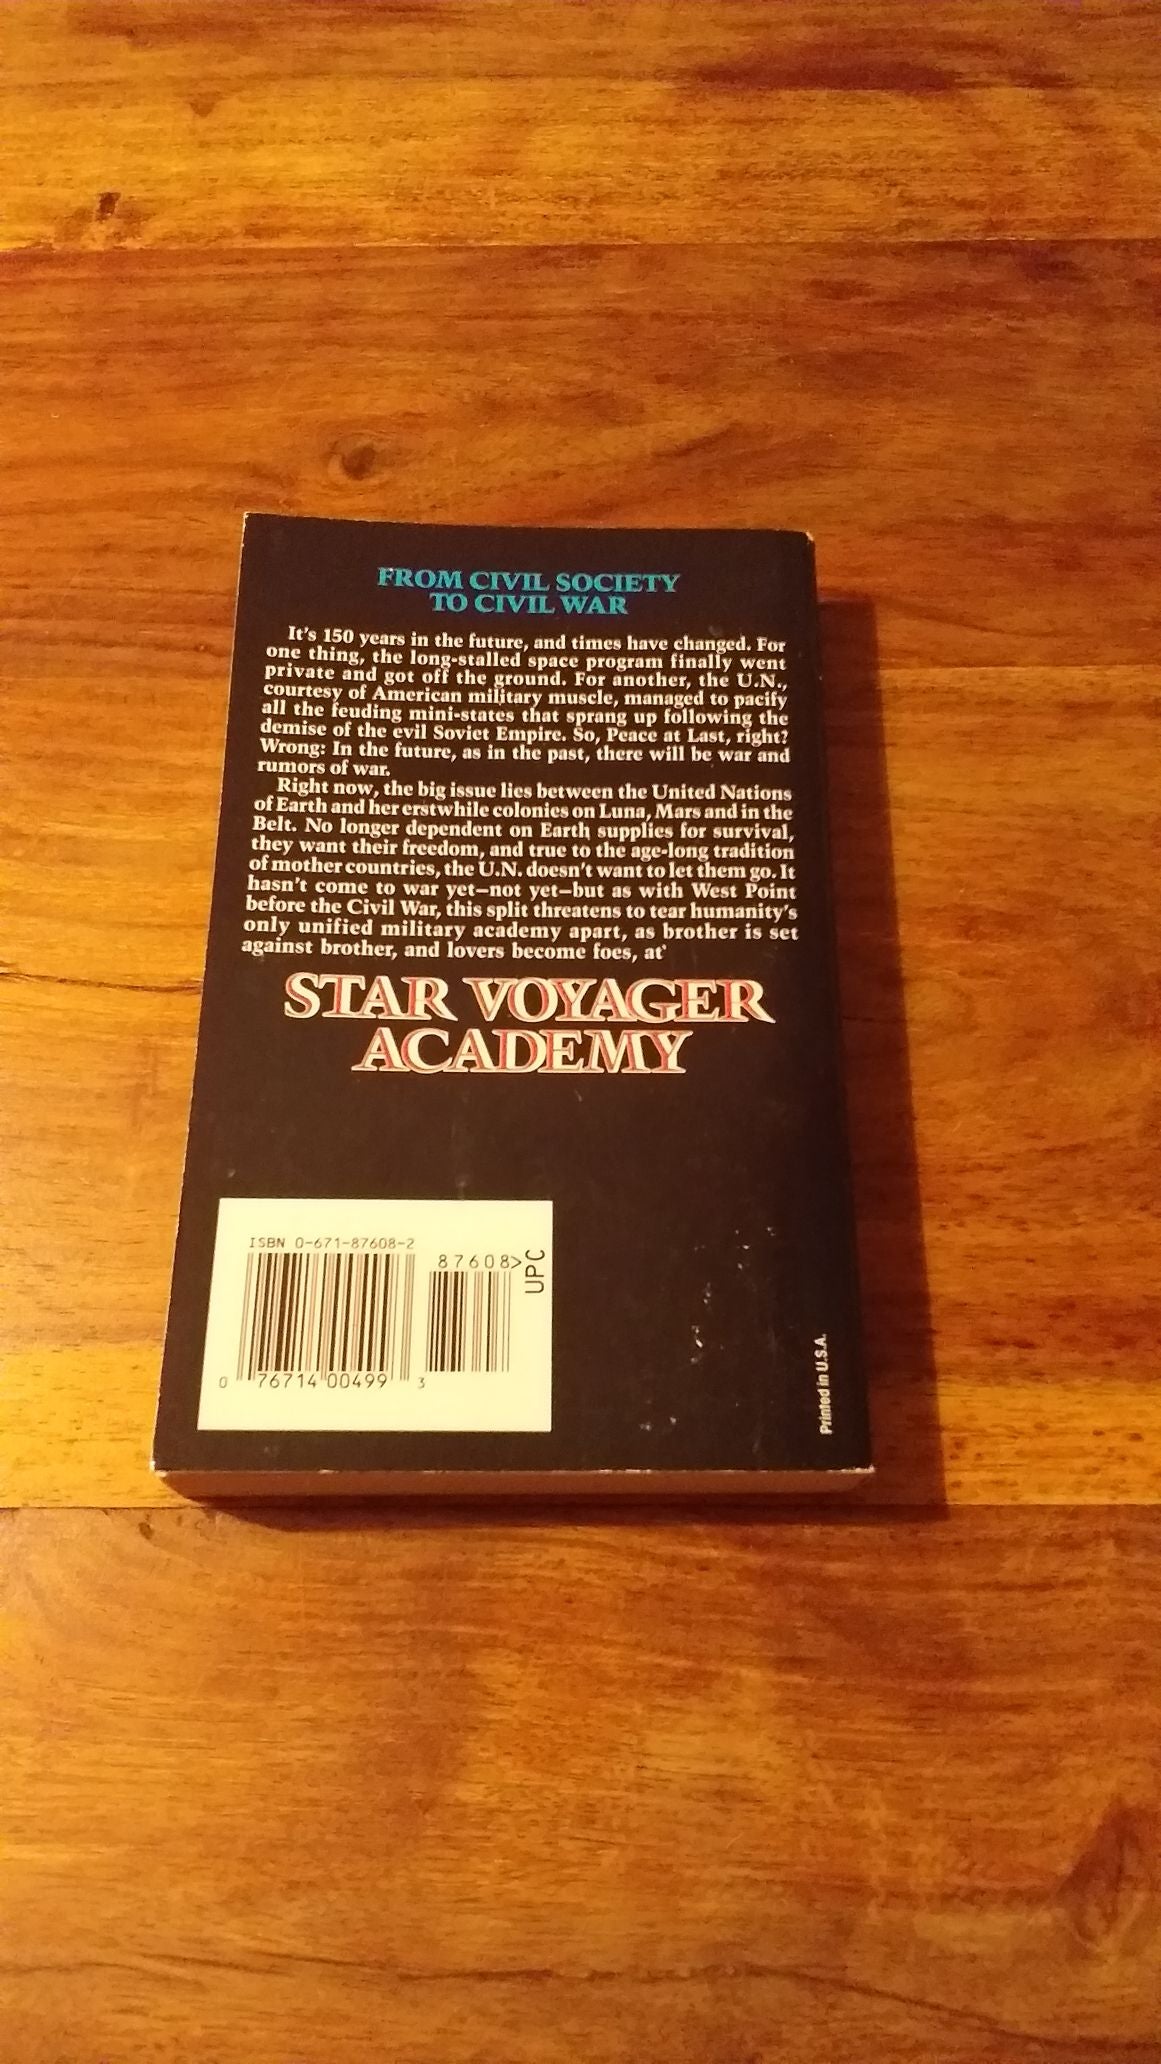 Star Voyager Academy by William R. Forstchen